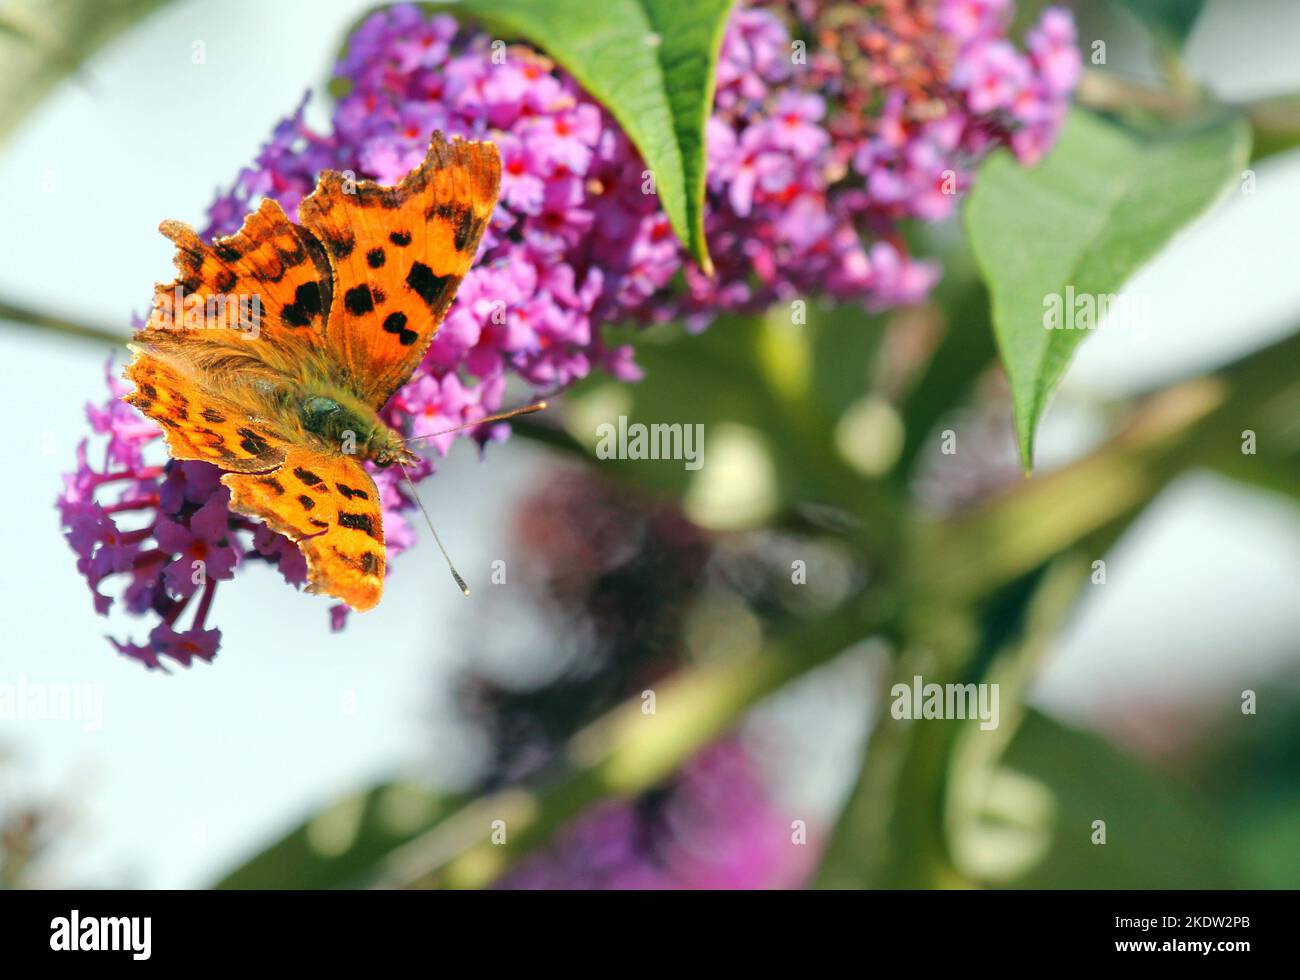 Polygonia c-album, la mariposa de la coma. Común en el Reino Unido. Tomar néctar de una flor de buddleia. Foto de stock